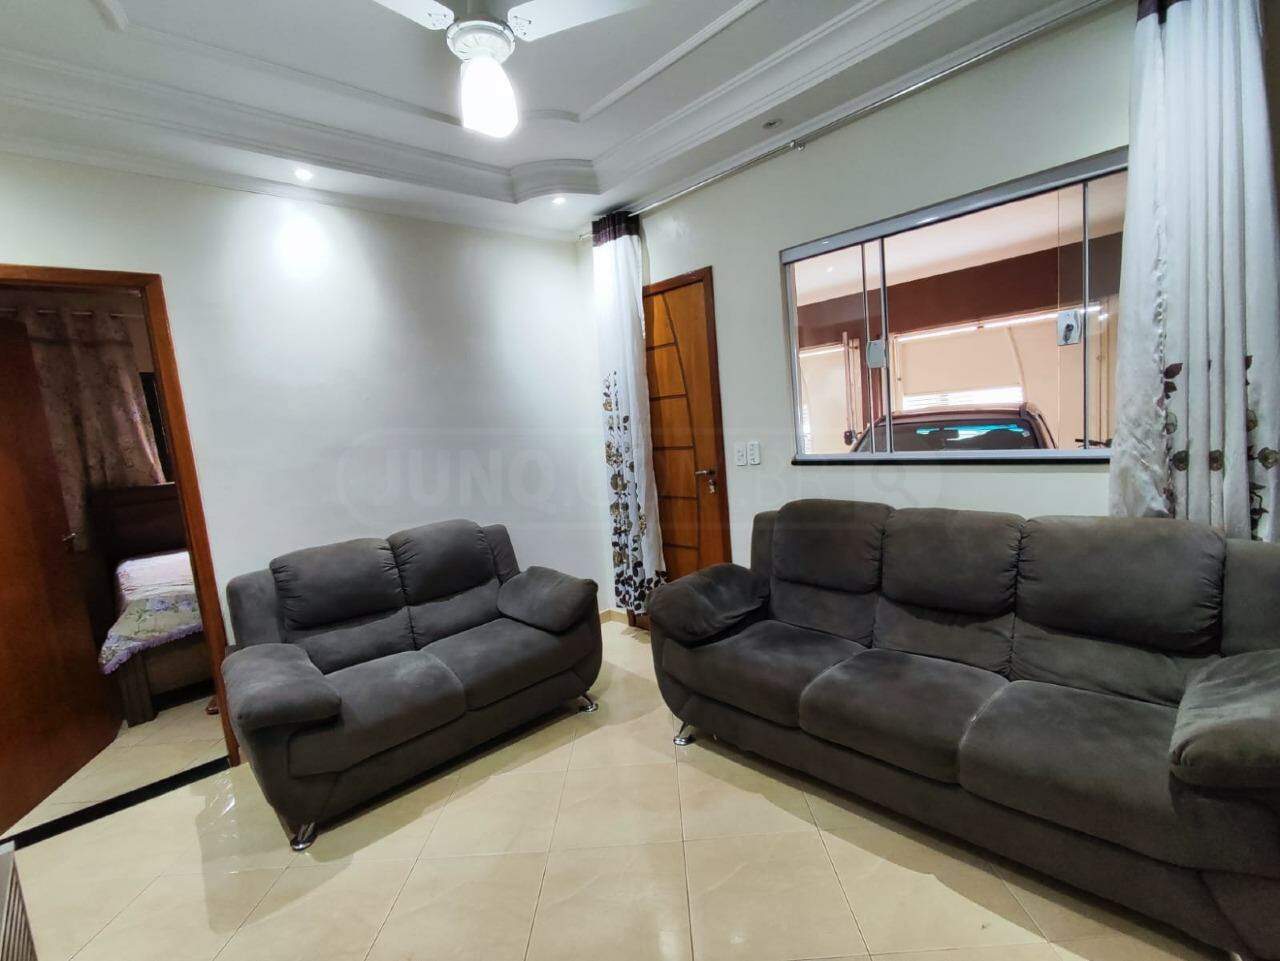 Casa à venda, 3 quartos, 3 vagas, no bairro Residencial Bom Jardim em Rio das Pedras - SP